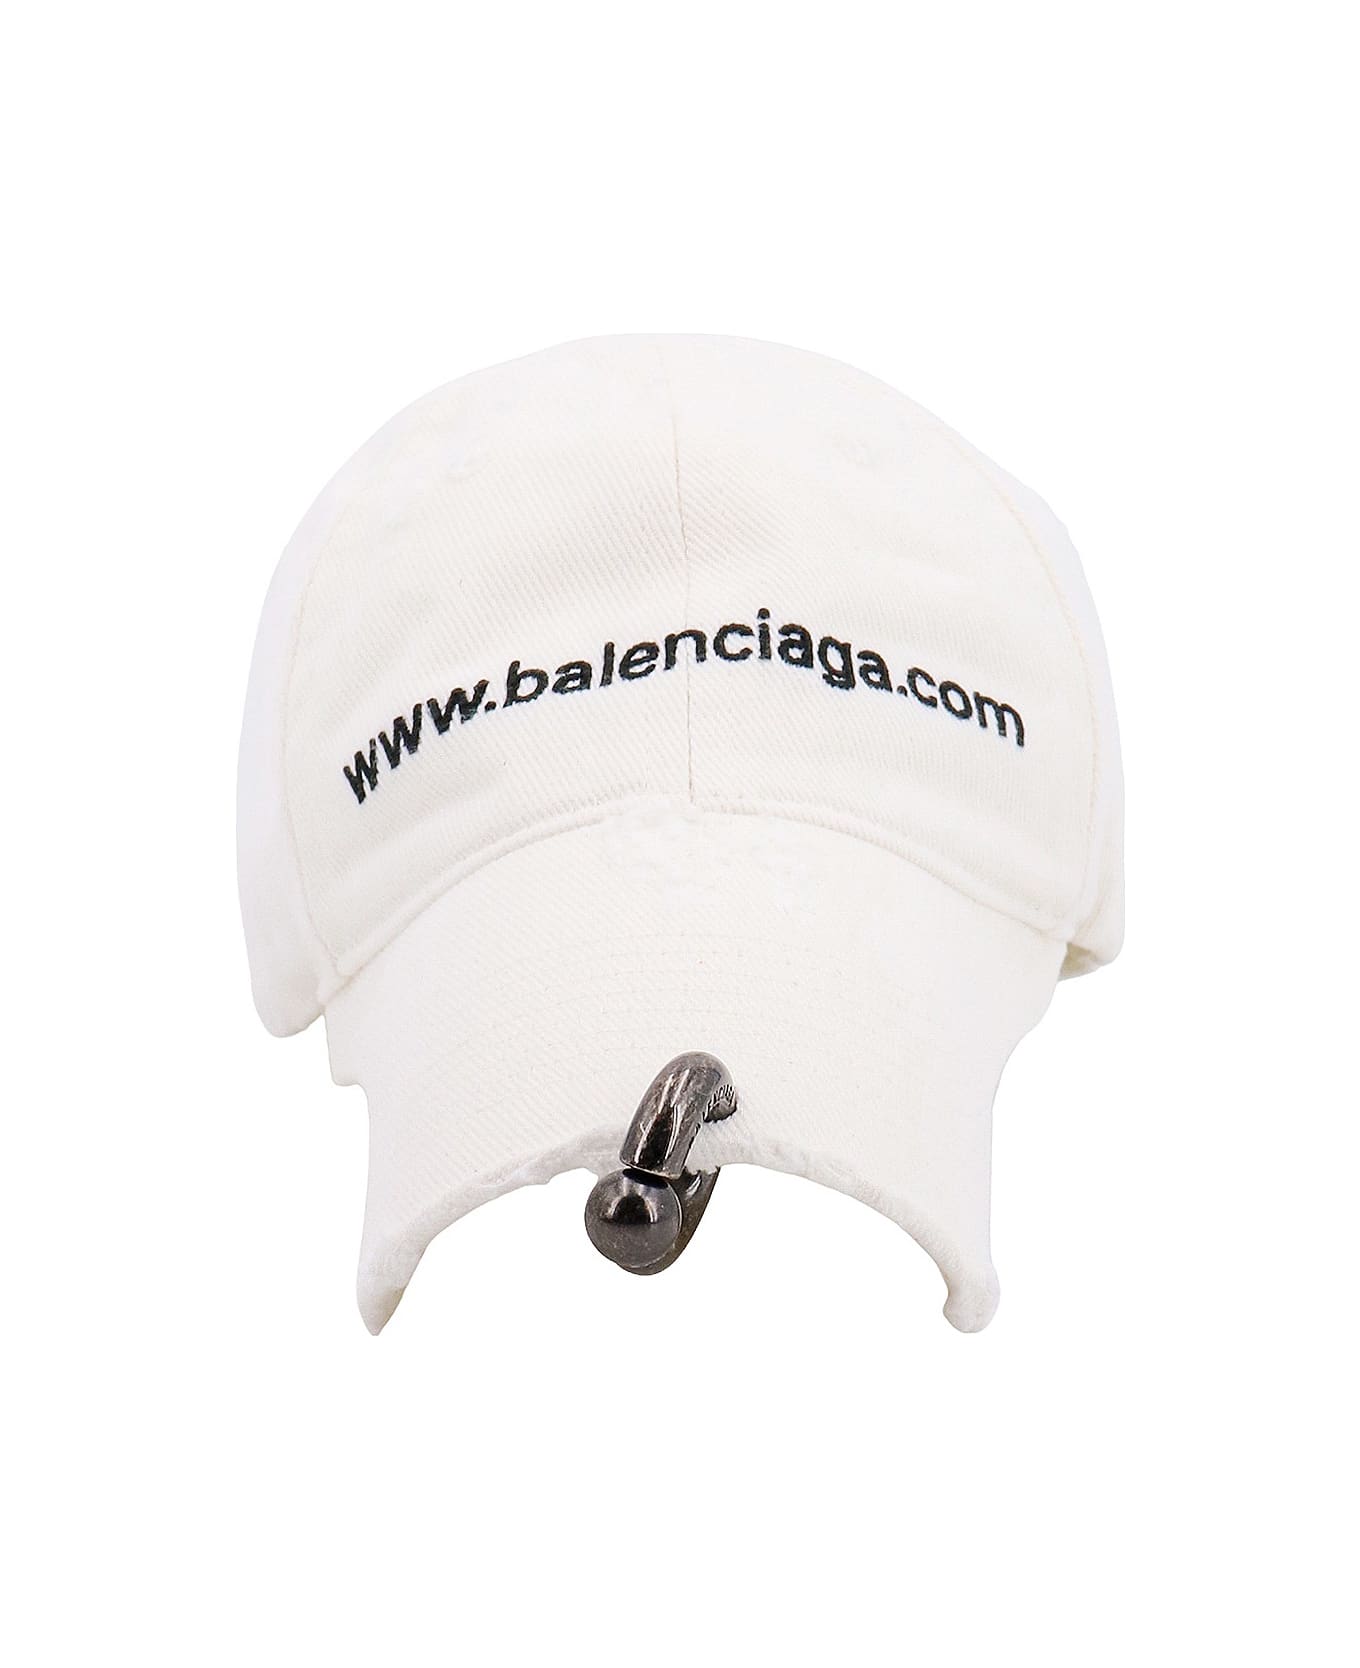 Balenciaga Hat - White 帽子